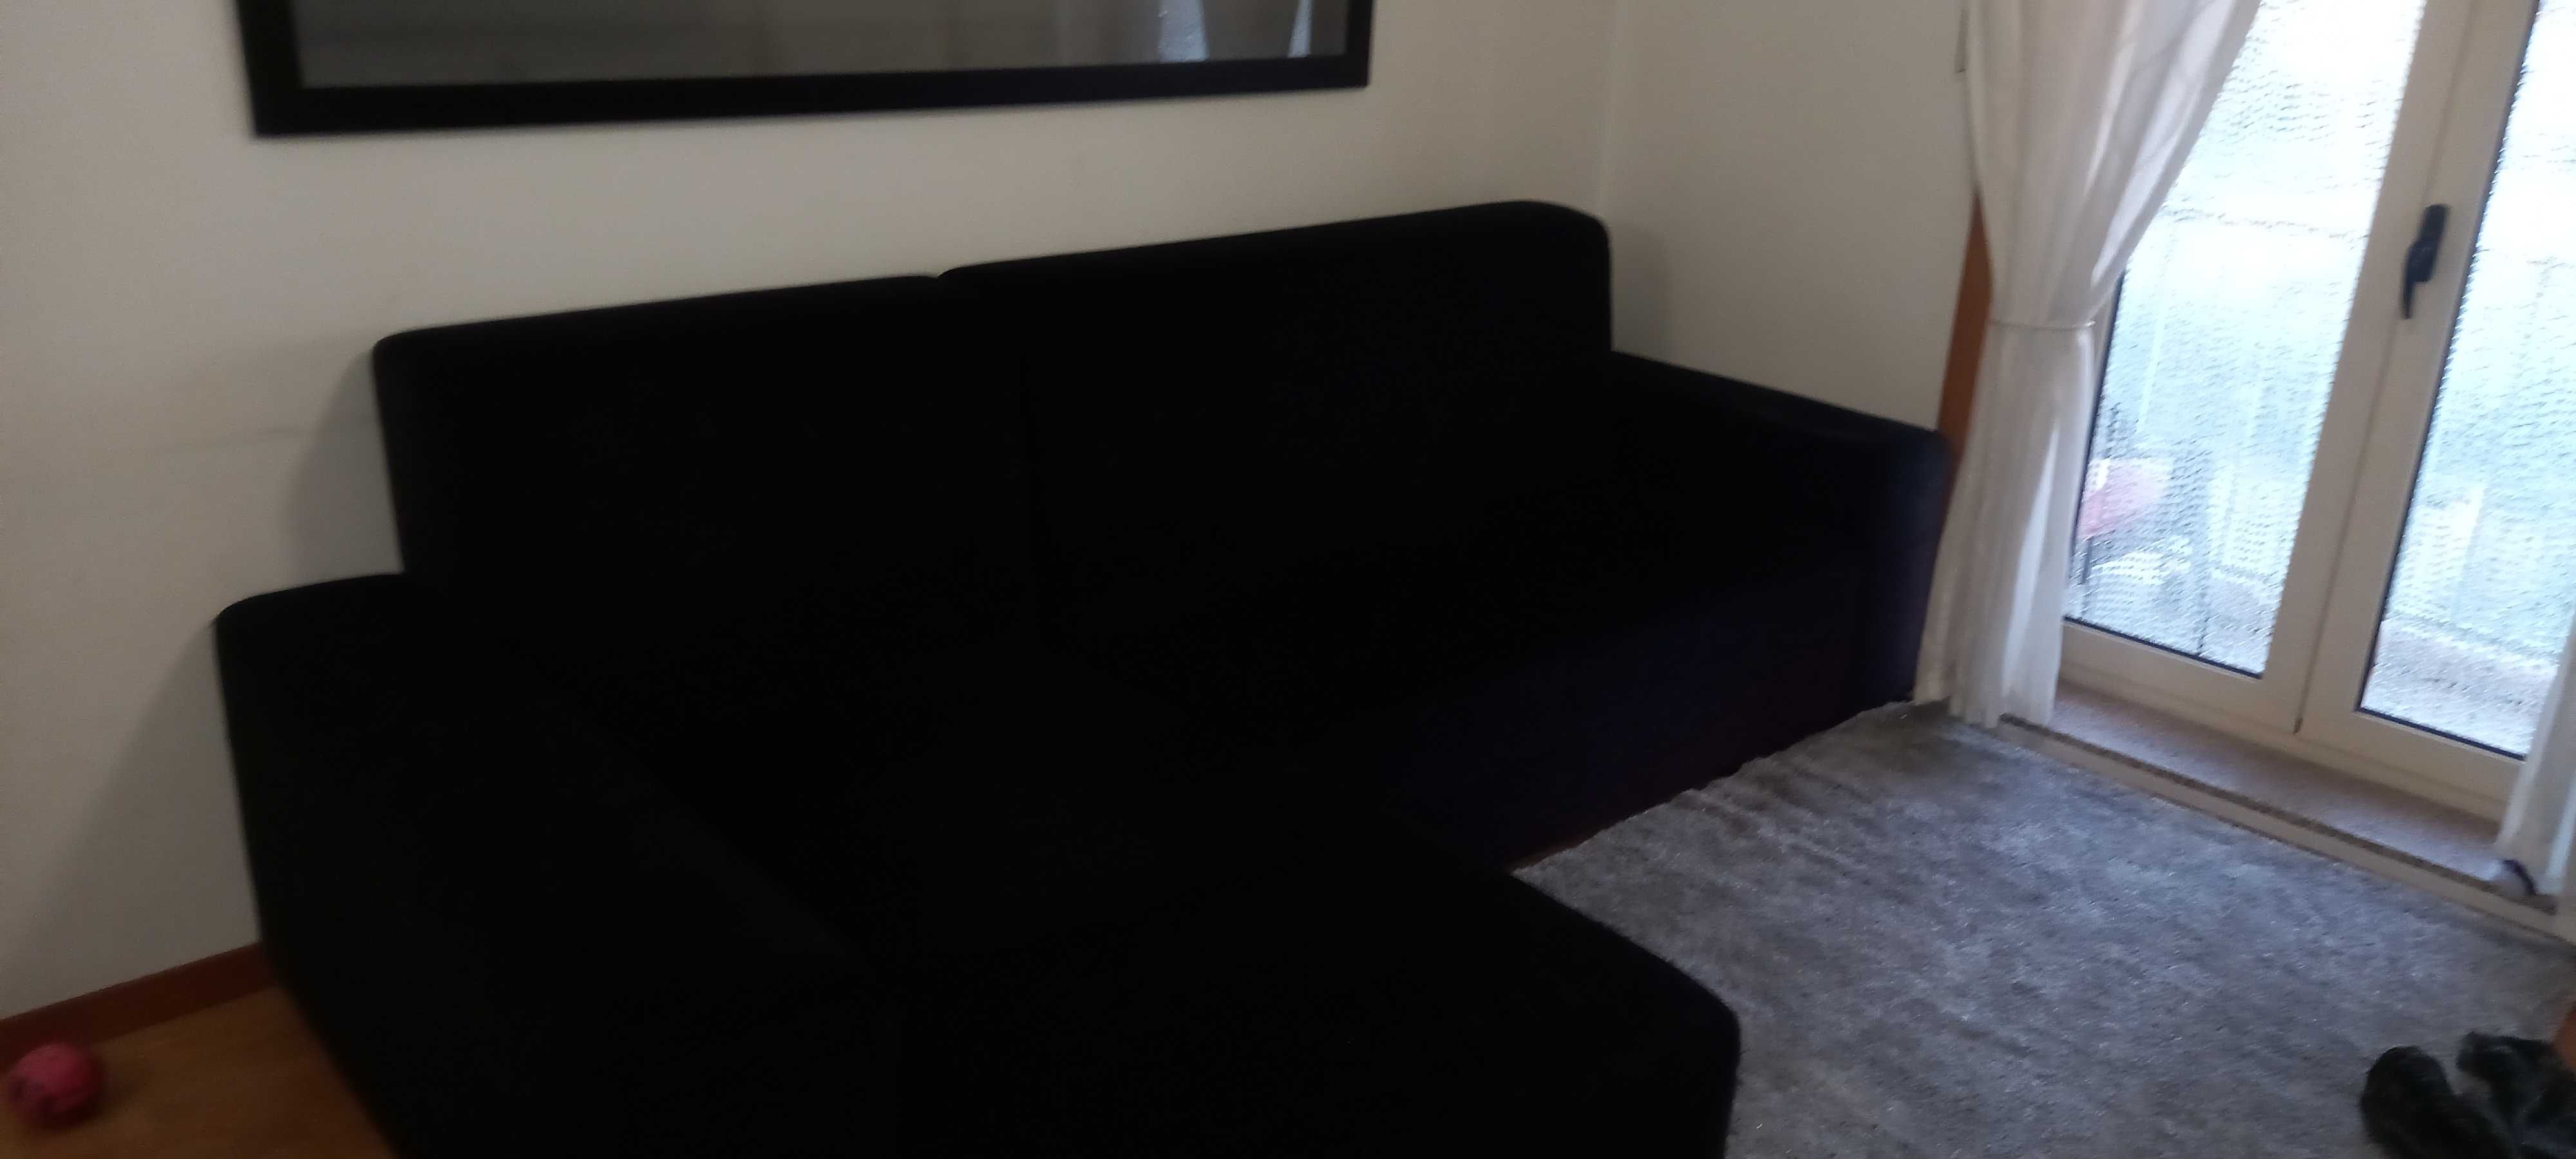 Sofa com chaiselobg em tecido